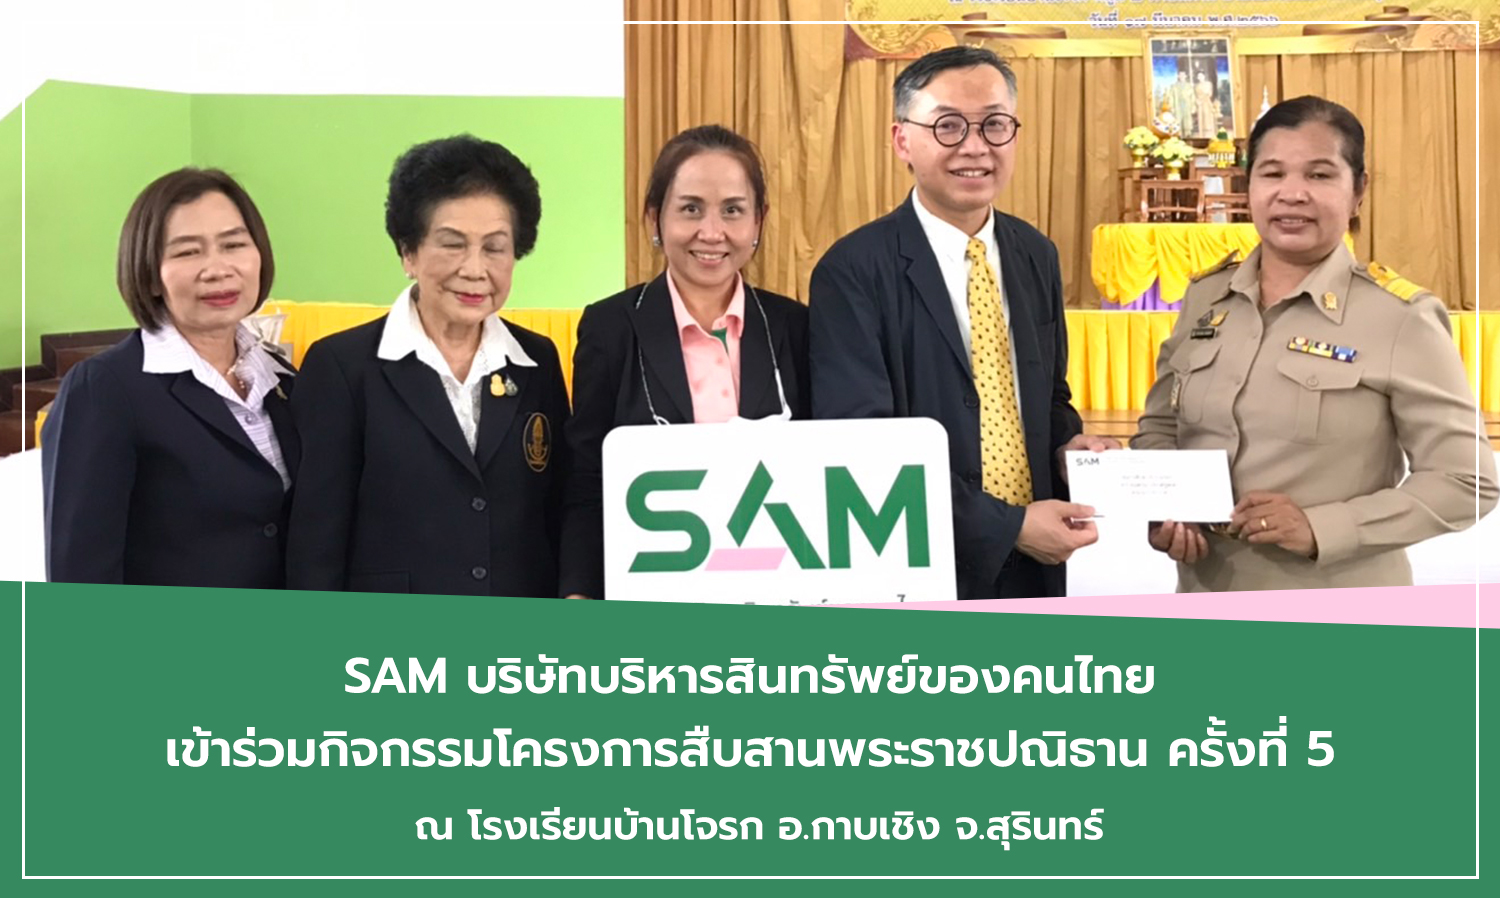 sam-บริษัทบริหารสินทรัพย์ของคนไทย-เข